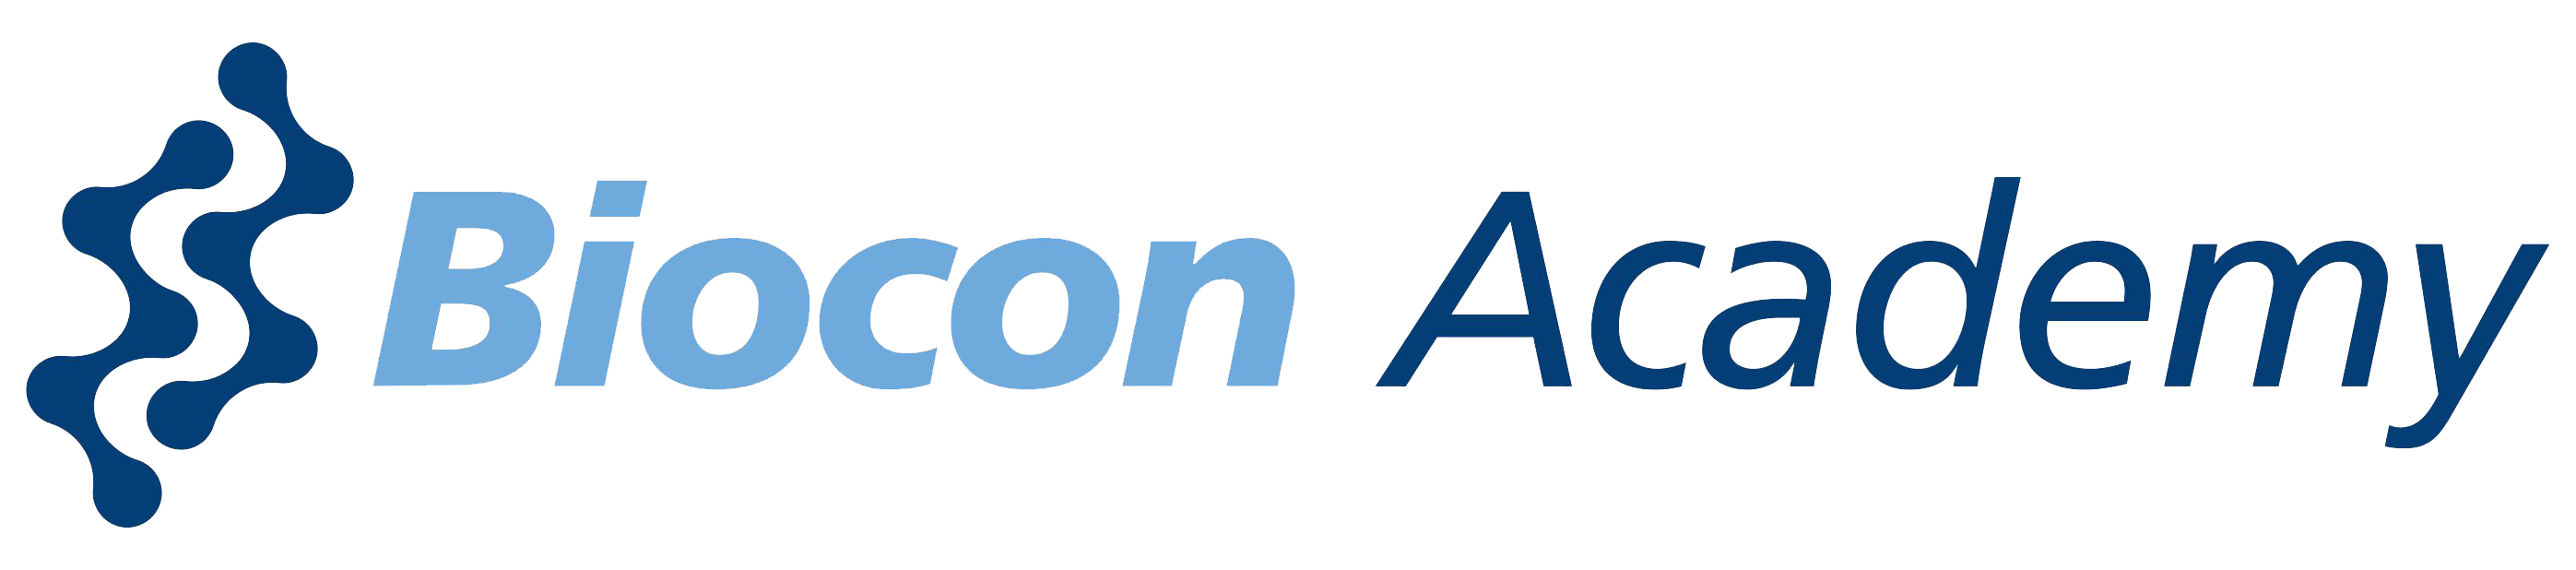 Biocon-Academy-Logo-High-Res